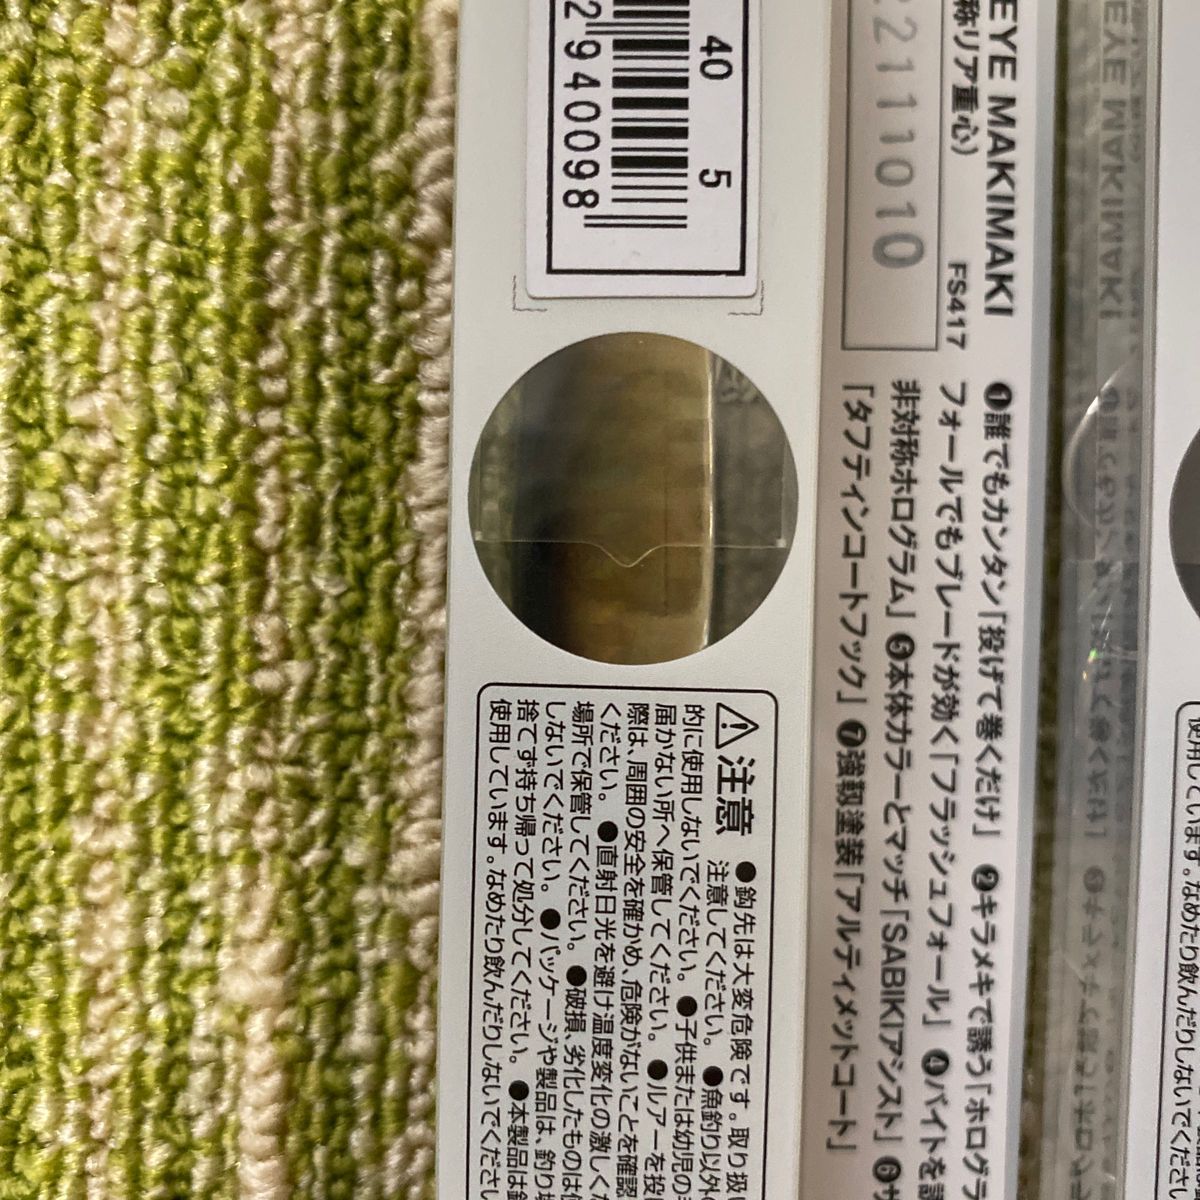 95メタルジグセット ハヤブサ ジャックアイマキマキ40g 3個セット ライブリーアジ イワシ ケイムラピンキーセクシー ブレード